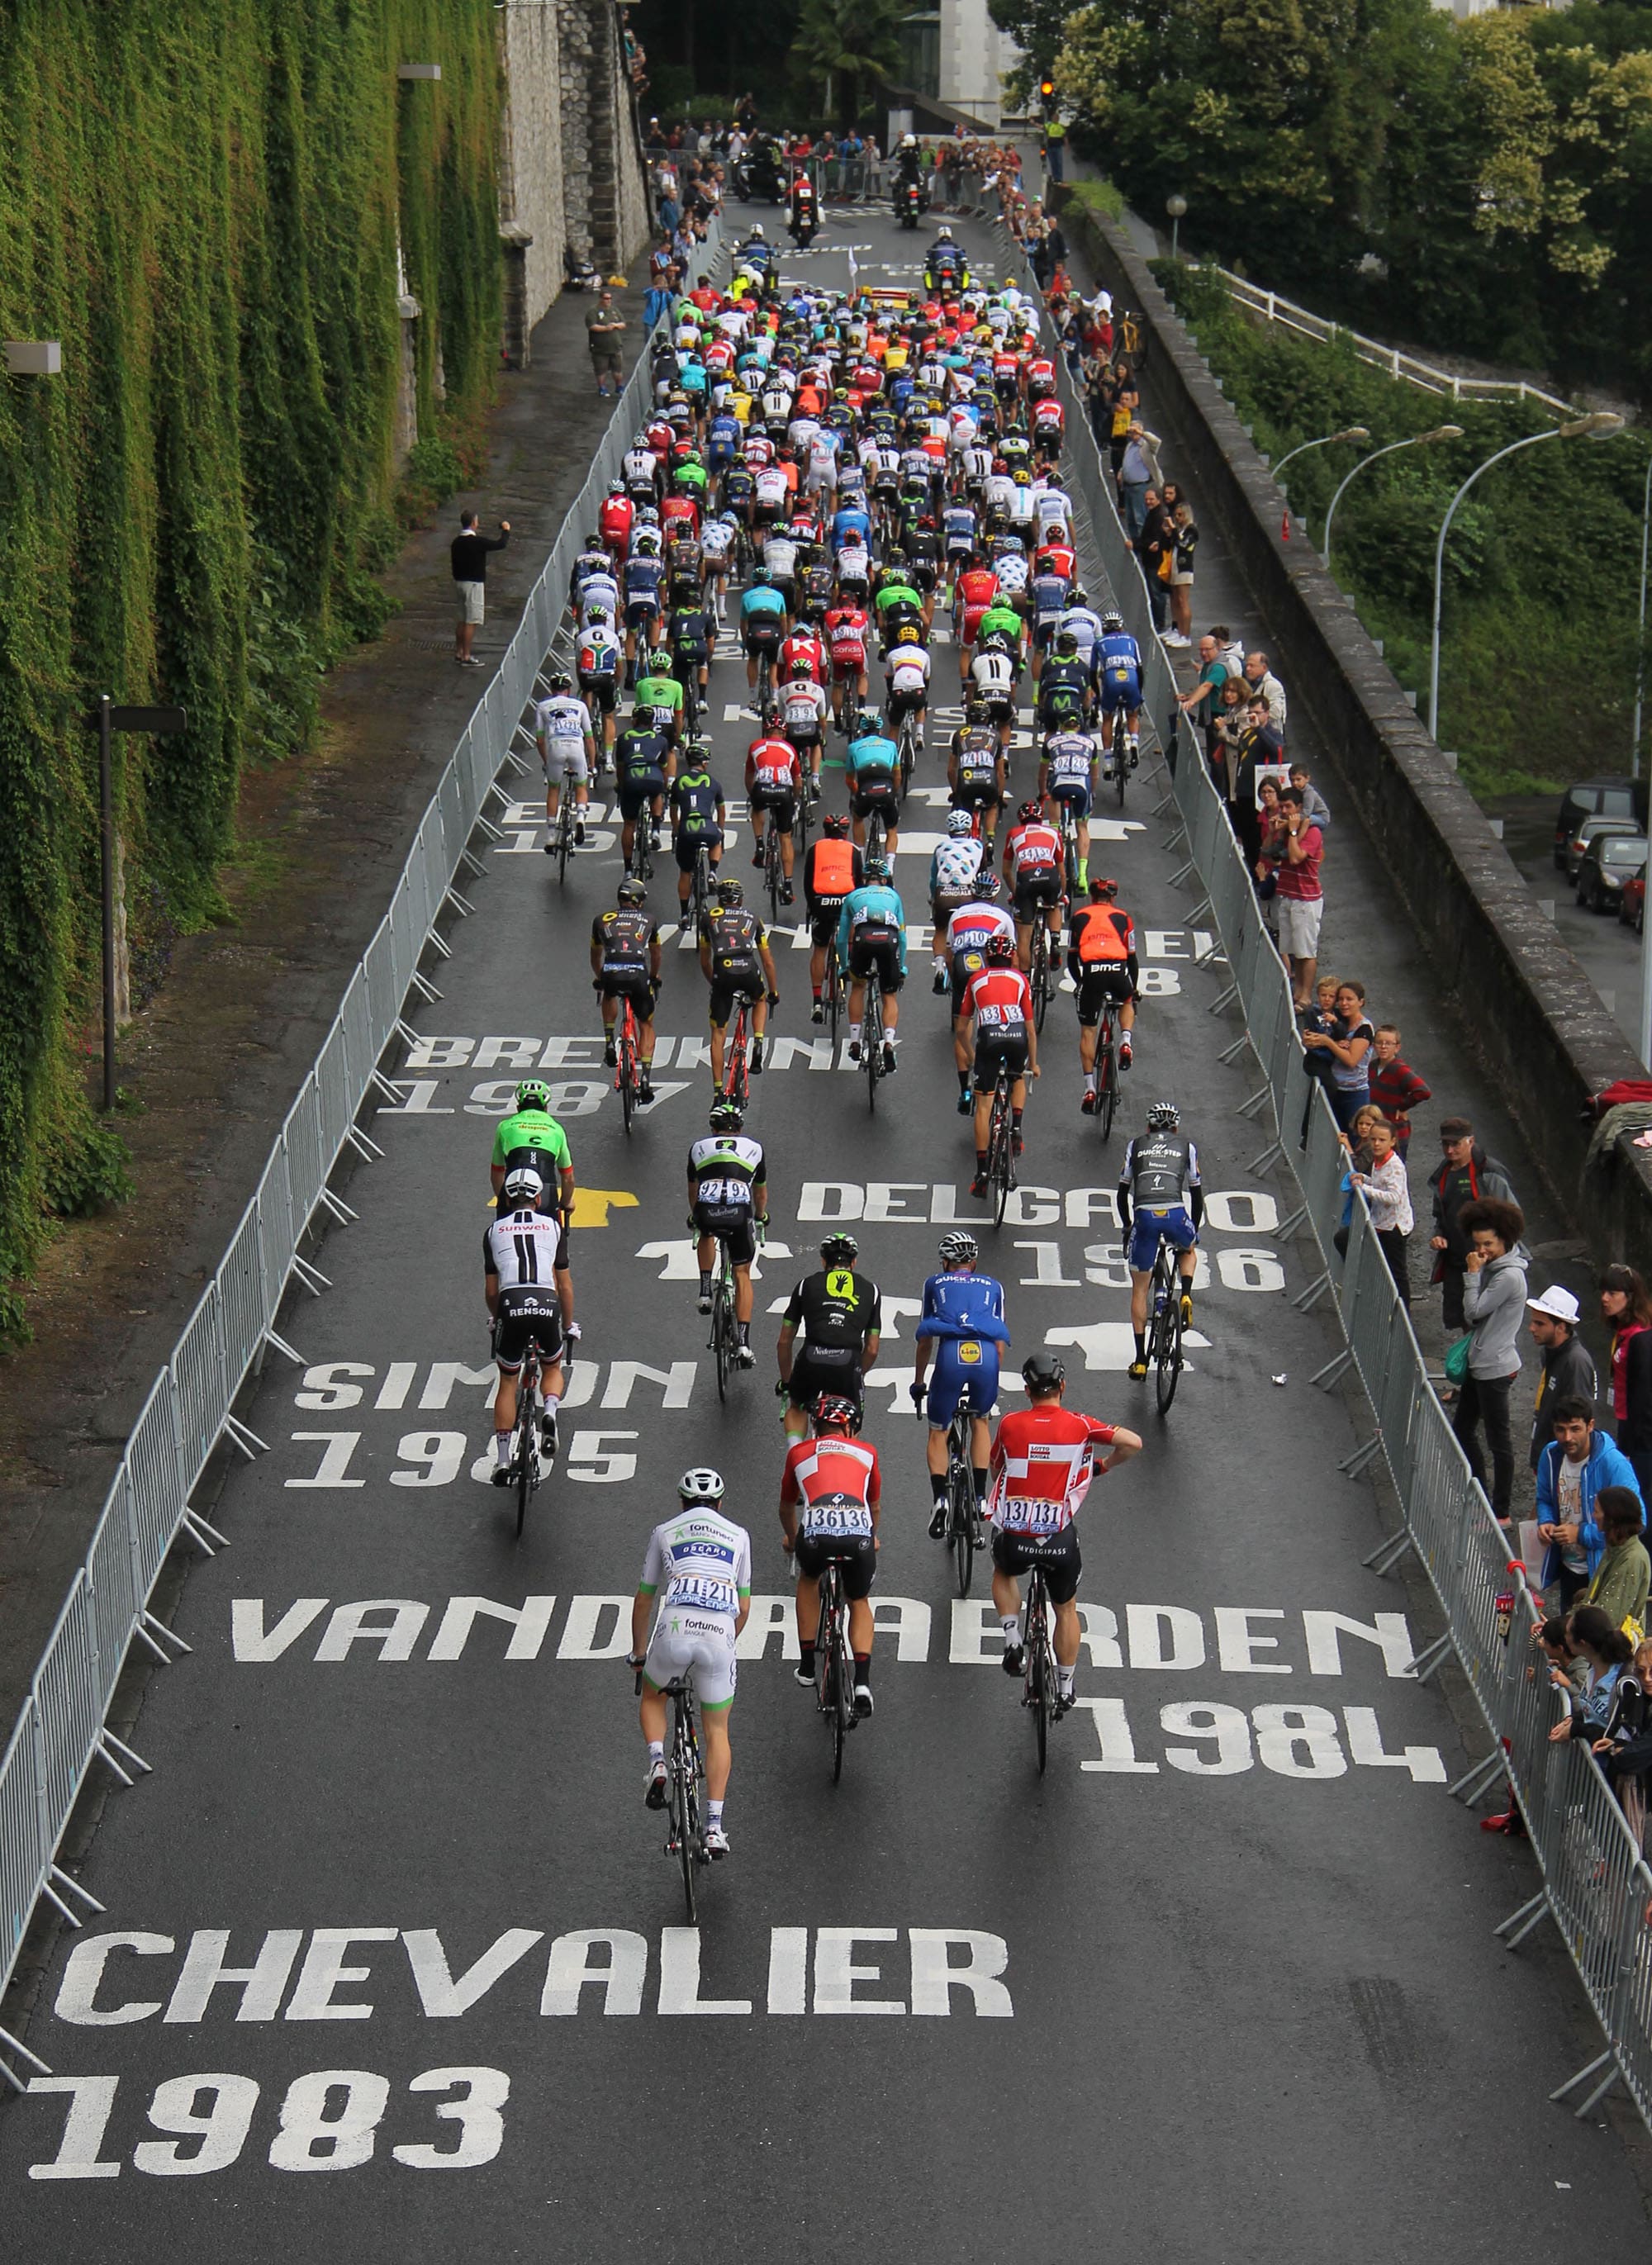 Photographie d'une cinquantaine de coureur cycliste remontant une route sur laquelle est peinte plusieurs noms et dates de gagnant d'étapes du Tour de France